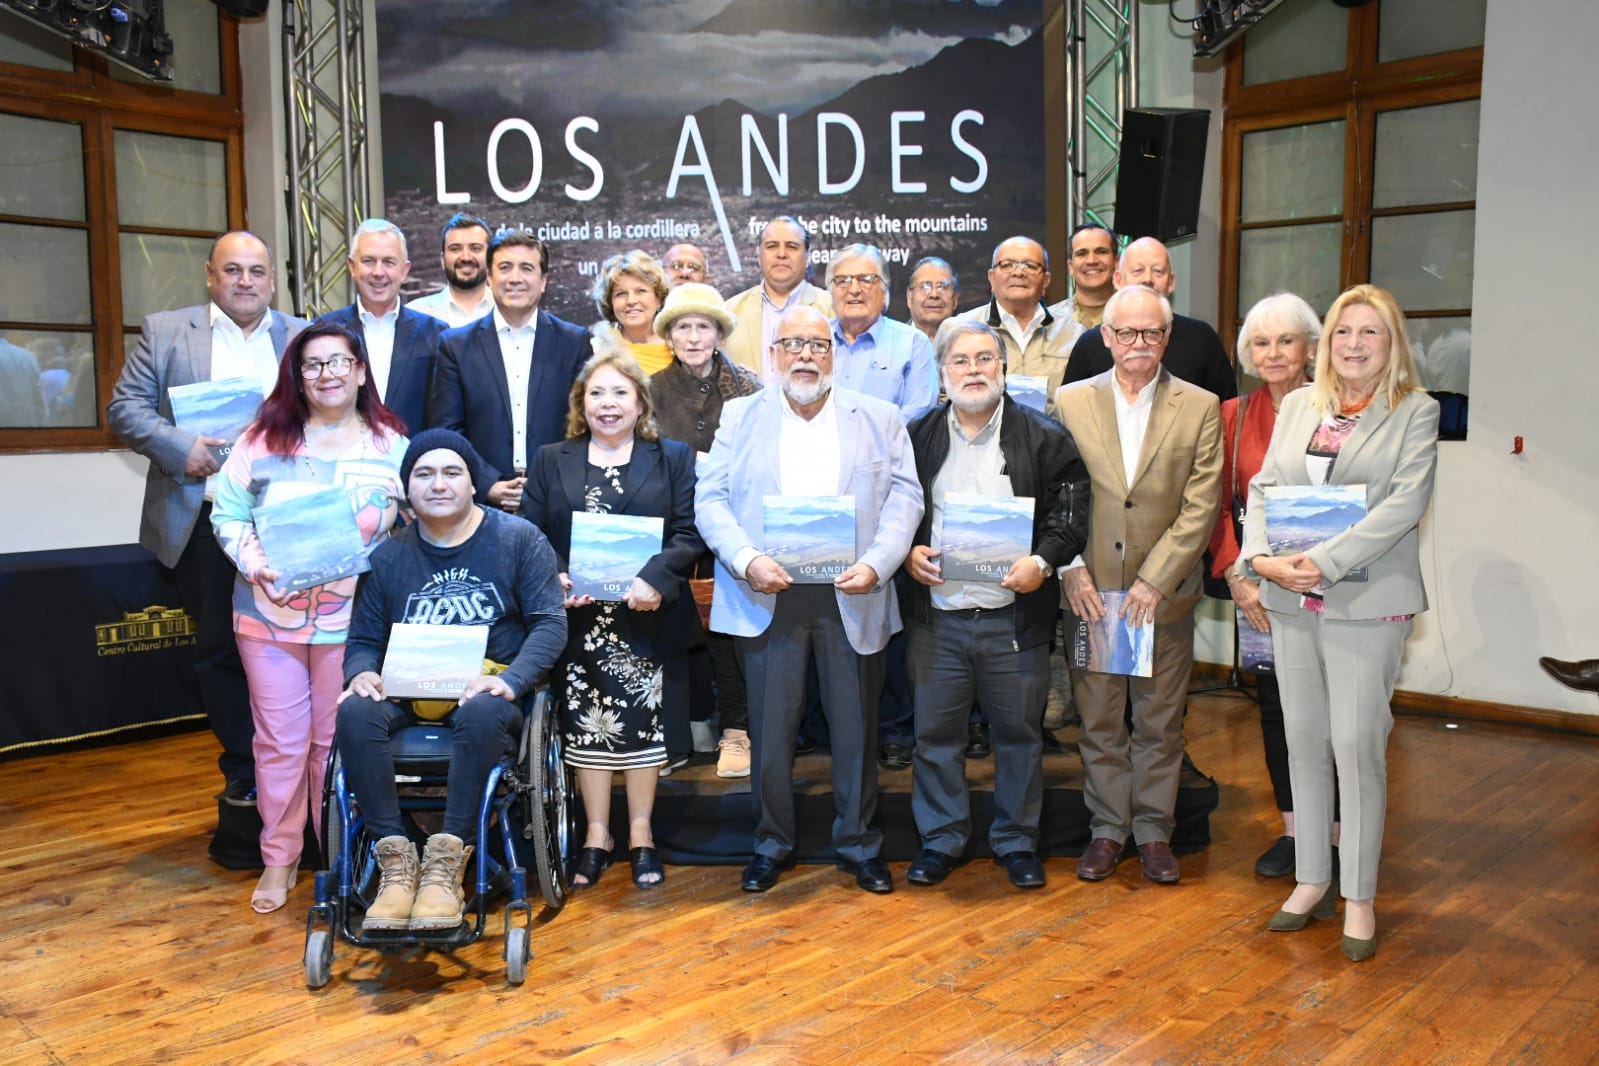 LOS ANDES: Presentan libro fotográfico de Los Andes que busca preservar el patrimonio de la ciudad